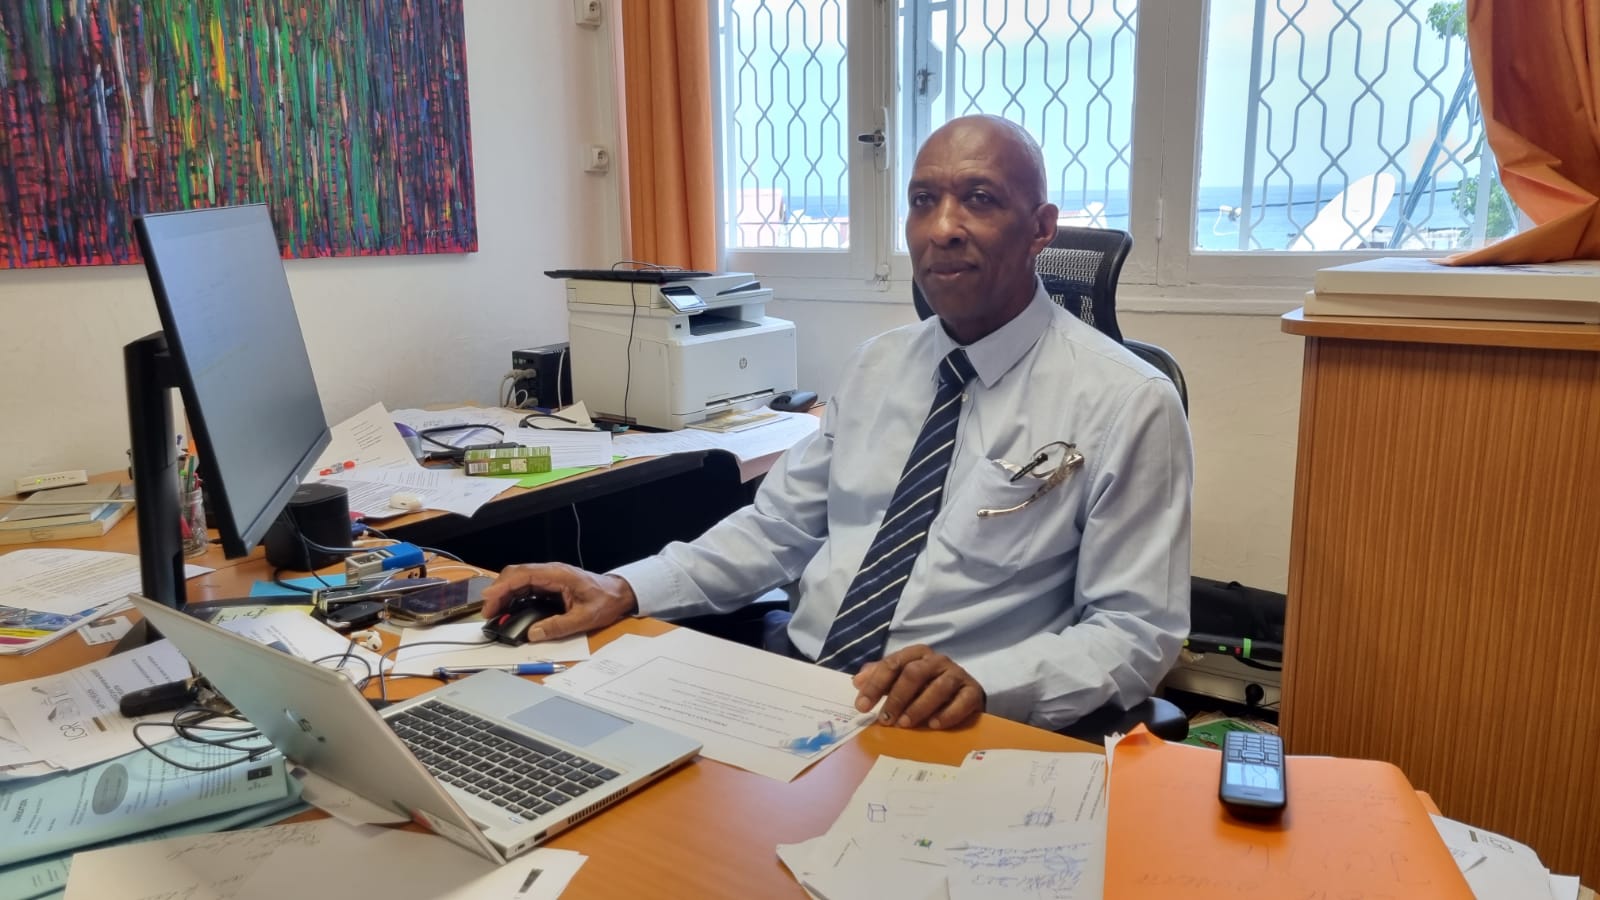     Basse-Terre : José Victorin, le proviseur du lycée Gerville Réache tire sa révérence 

